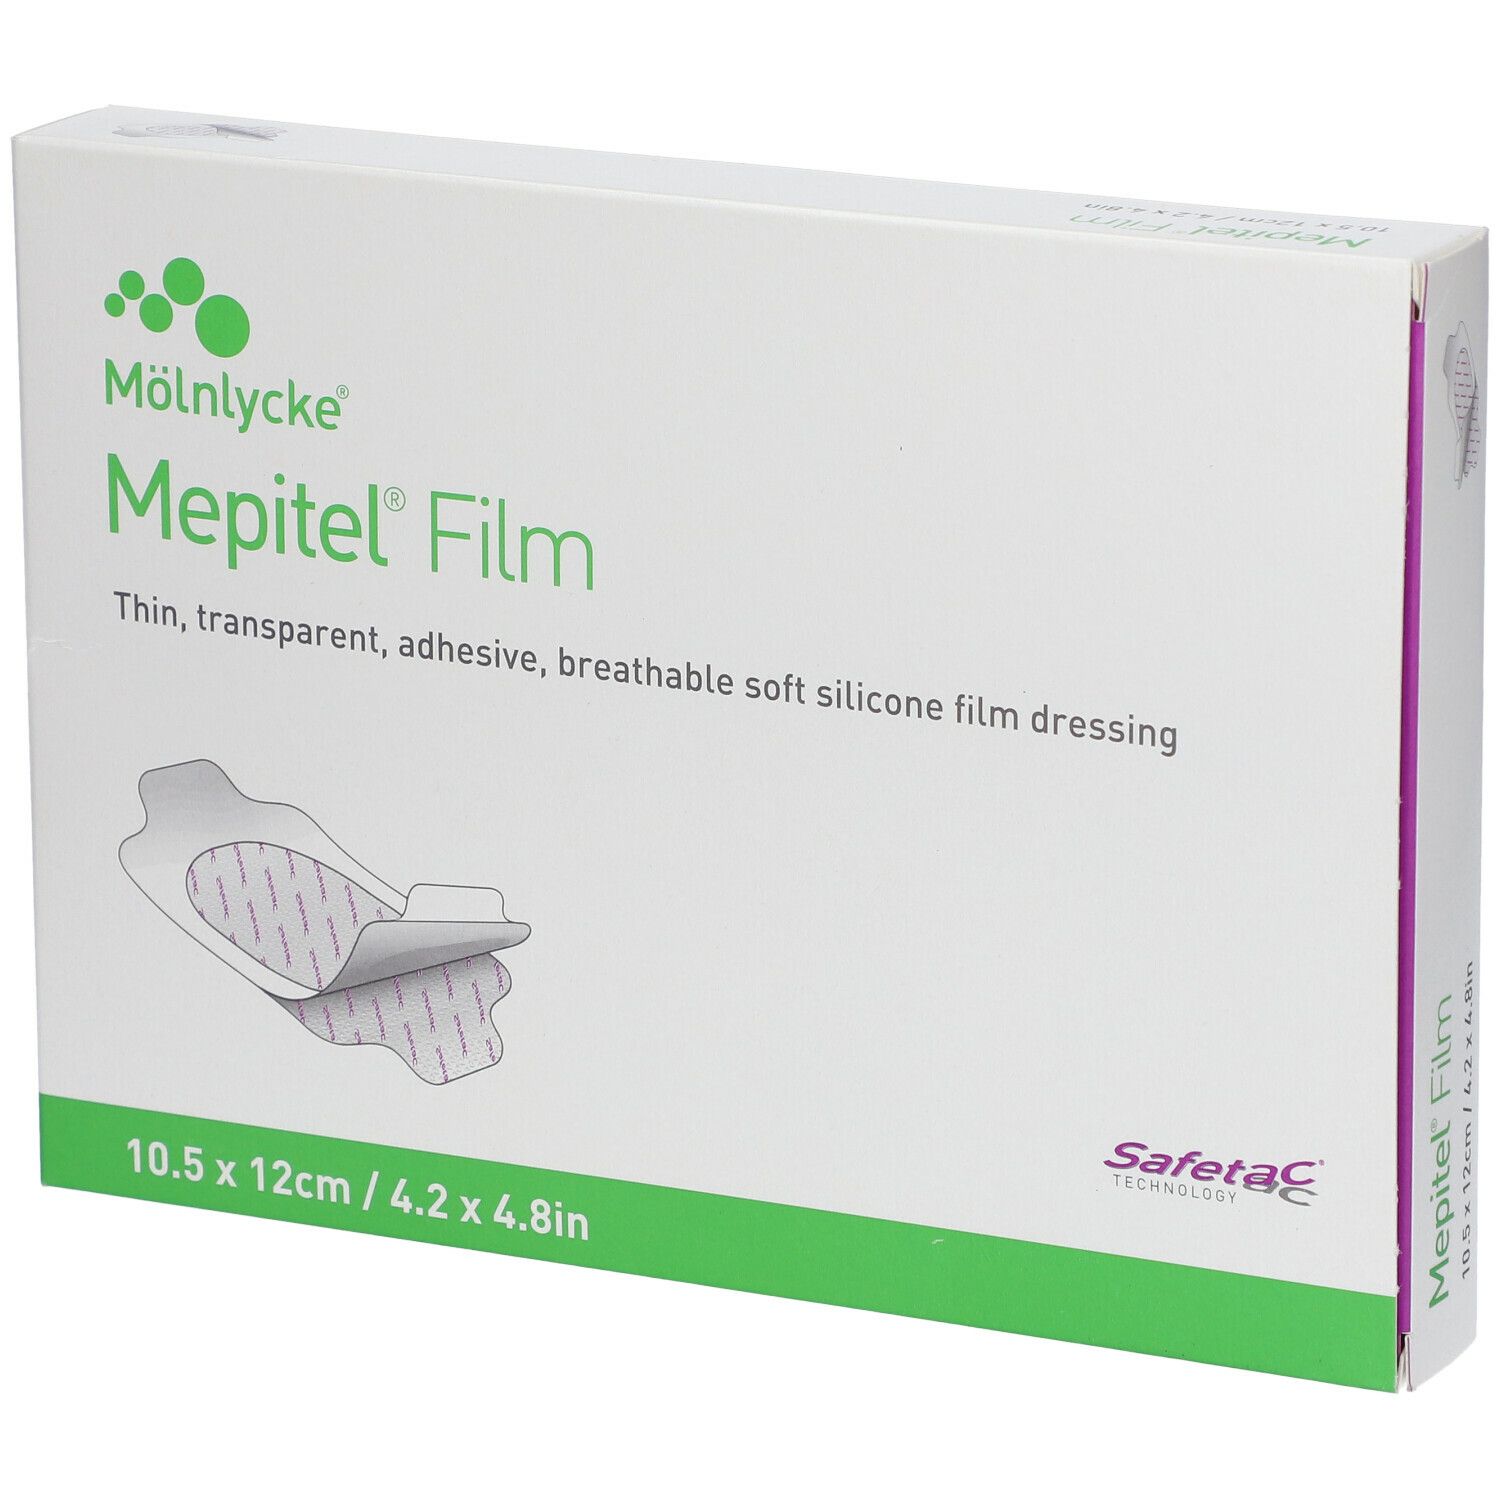 Mepitel Film Dressing